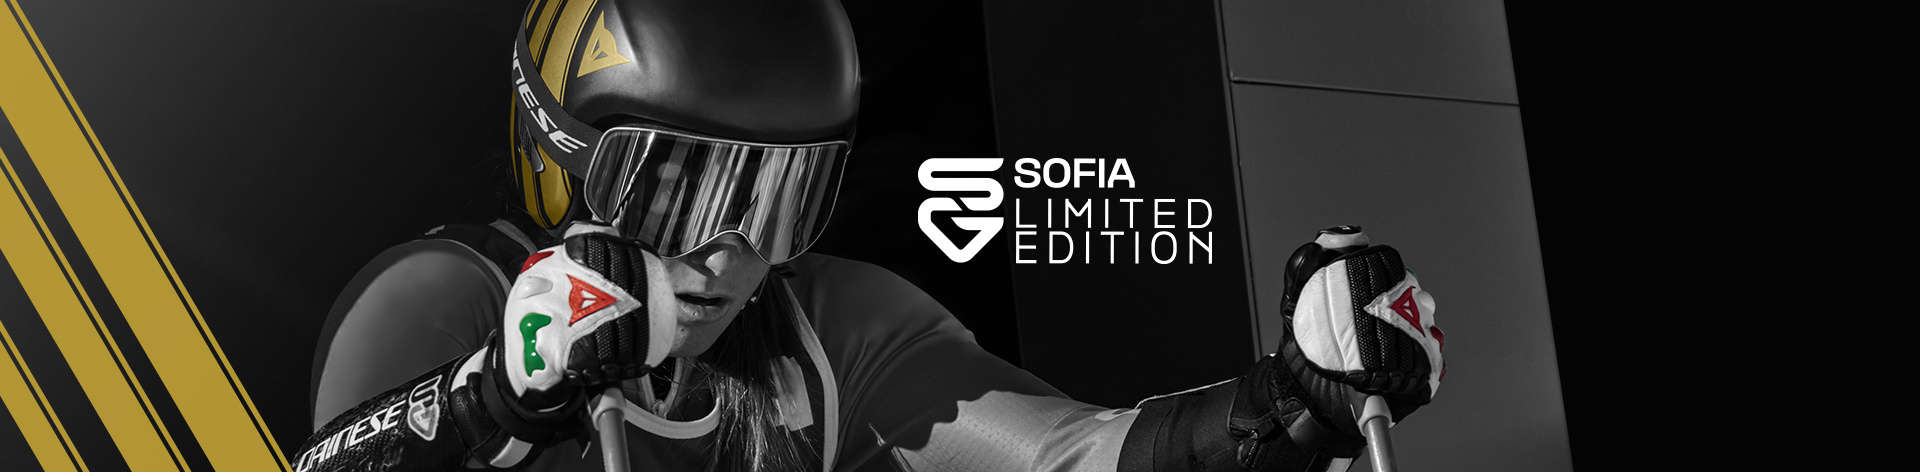 Sofia Goggia Limited Edition